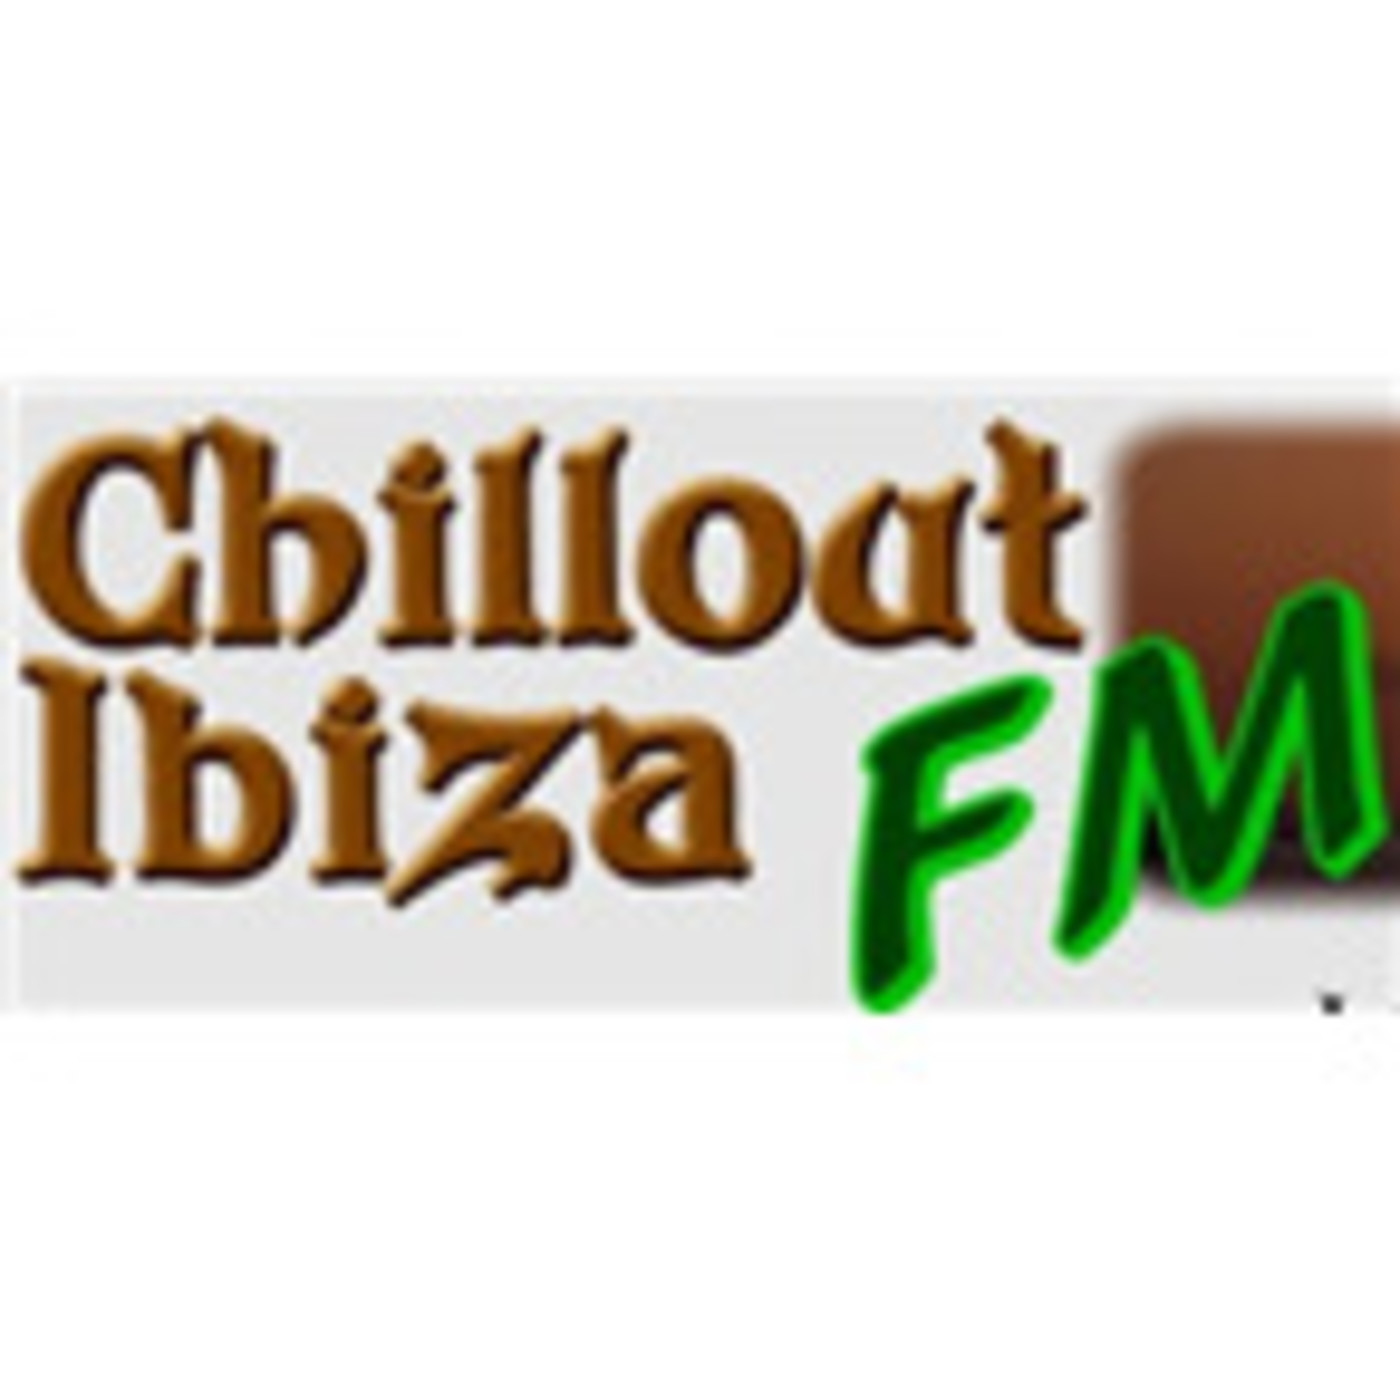 Chillout Ibiza FM Free Internet Radio TuneIn